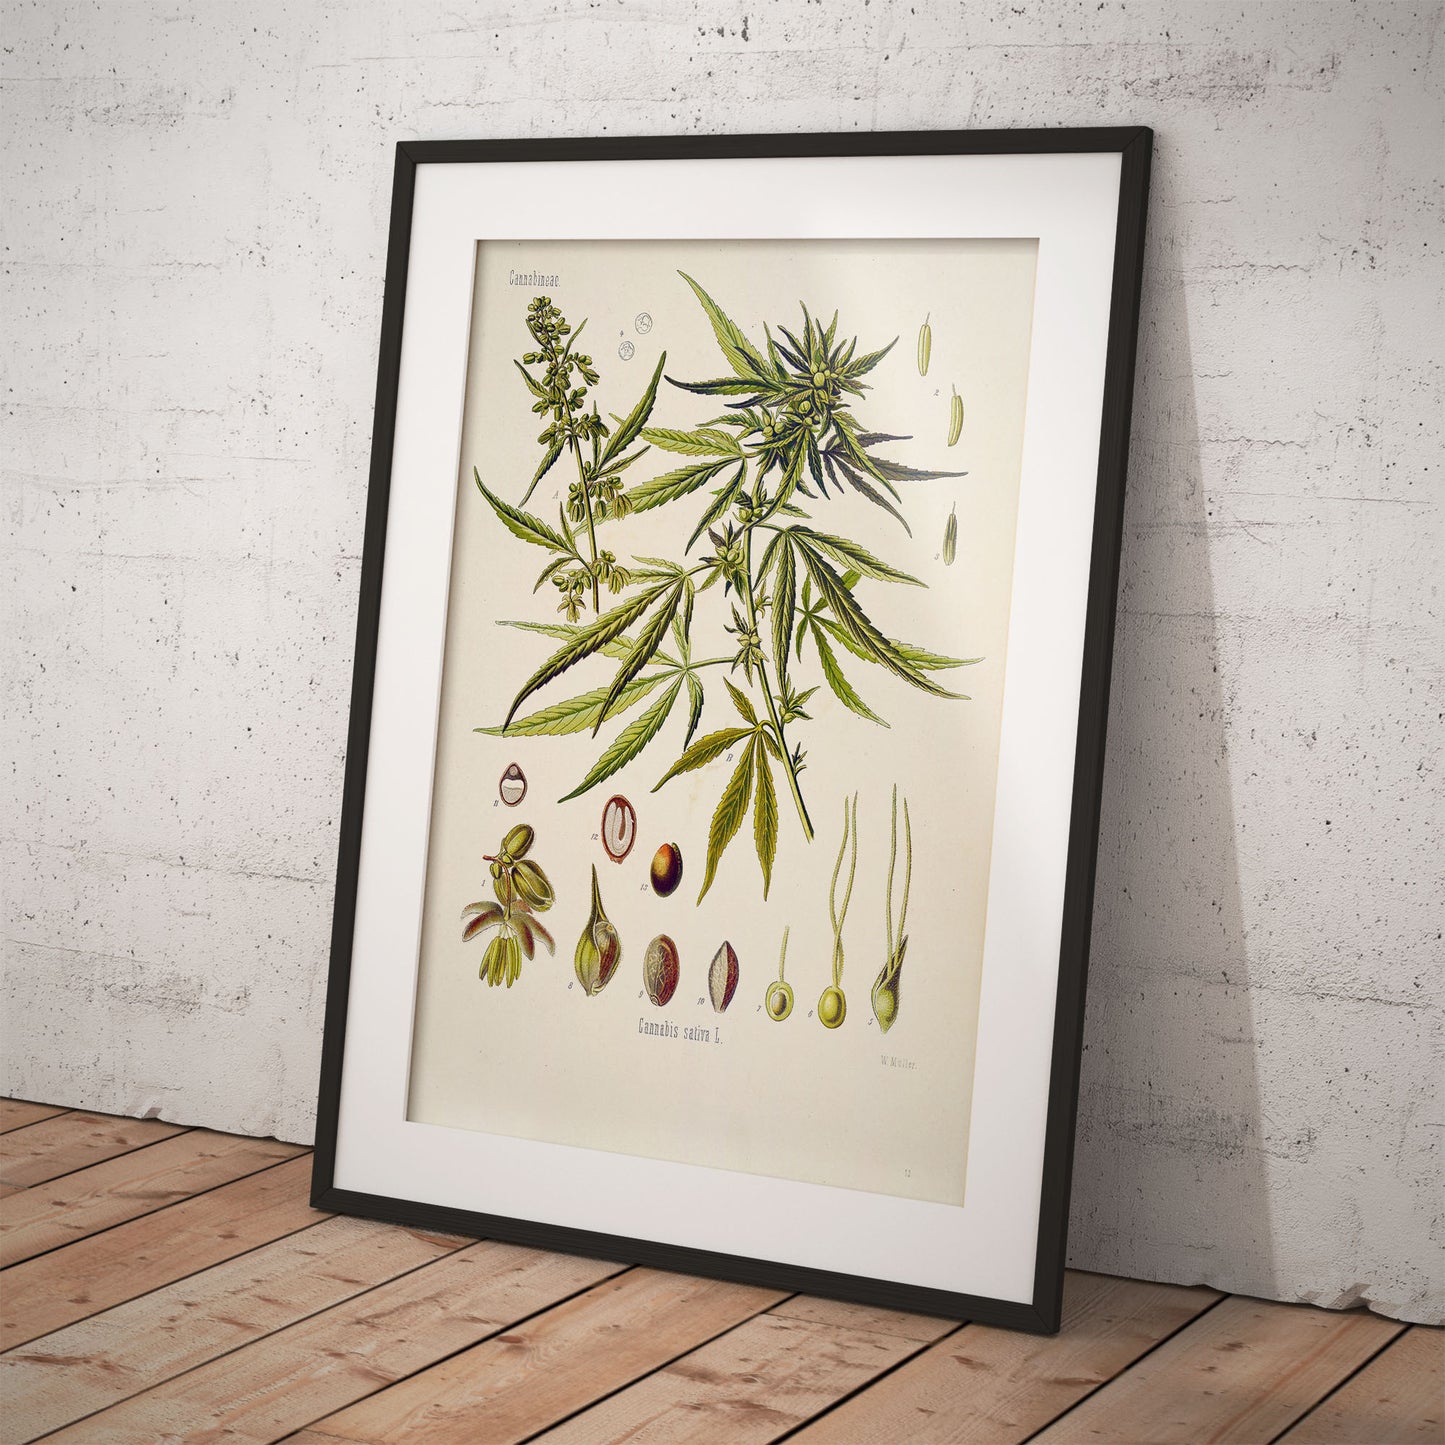 Cannabis (Hemp) from Köhler’s Medicinal Plants / Cannabis sativa